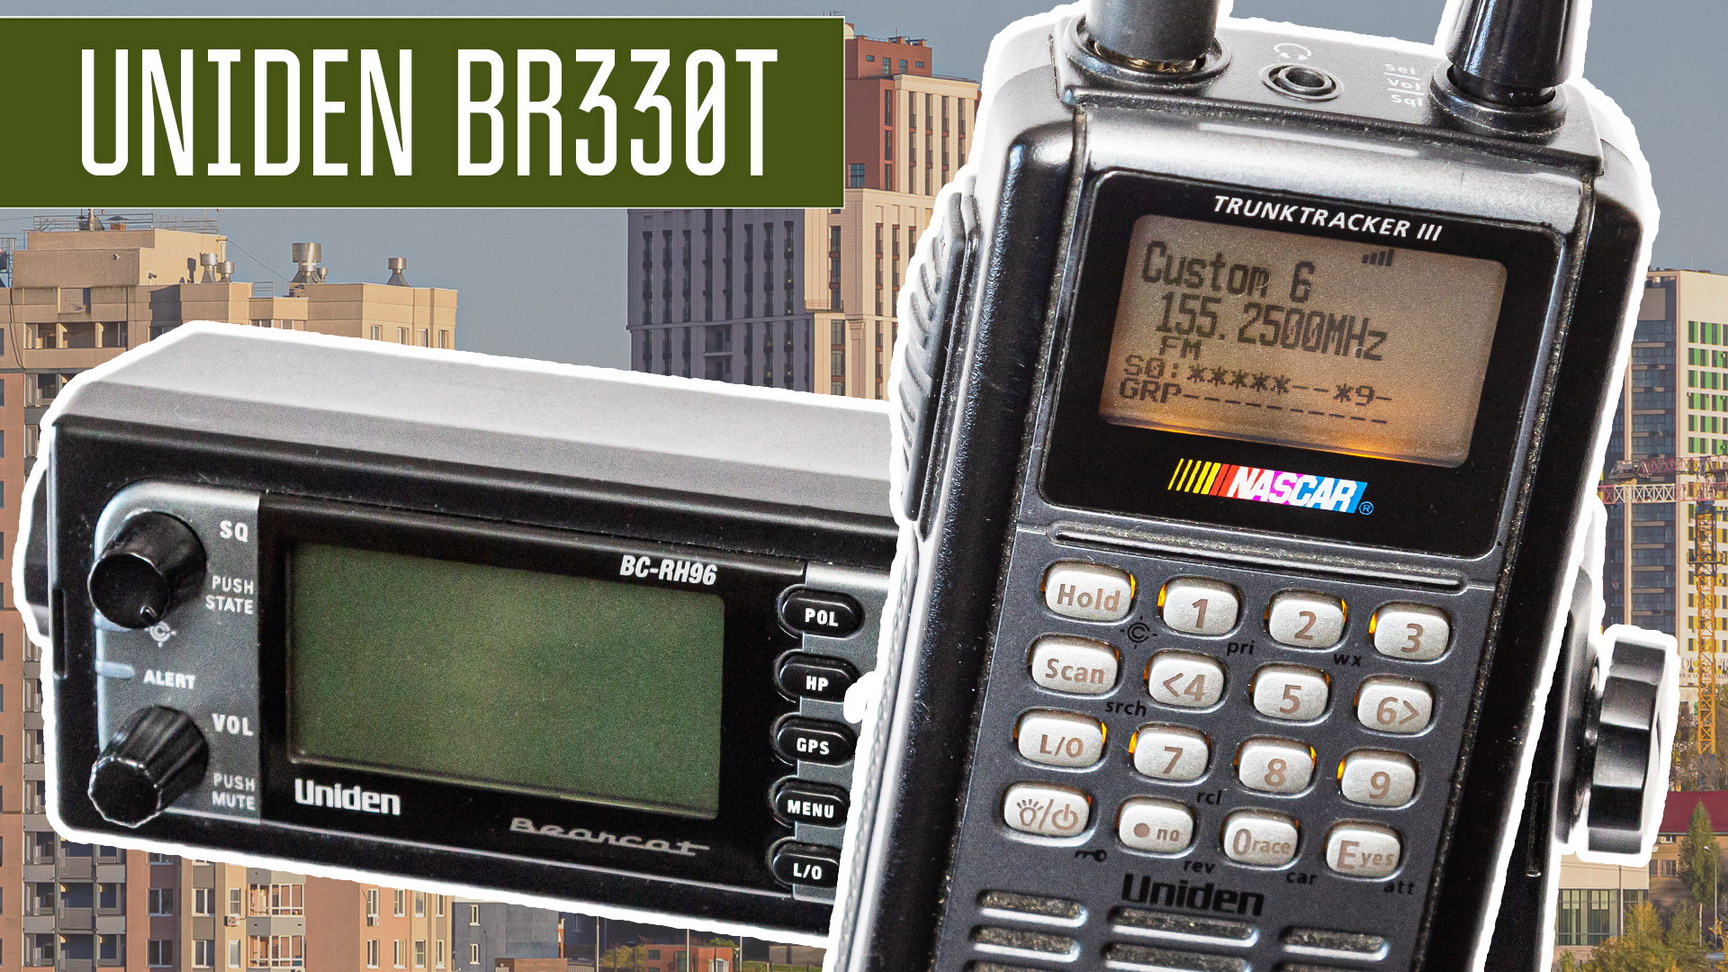 Uniden BR330T Приёмник сканер 0.1 - 1300 МГц. Uniden с КВ диапазоном. Работа, устройство.